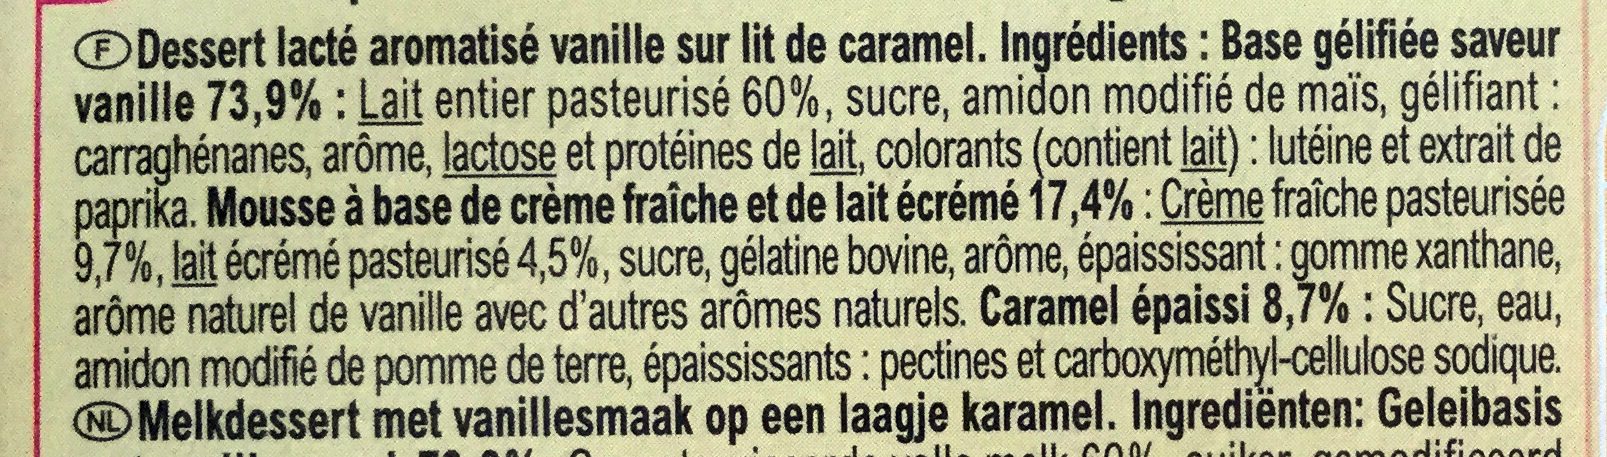 Liégeois Saveur vanille sur lit de caramel - Ingredients - fr